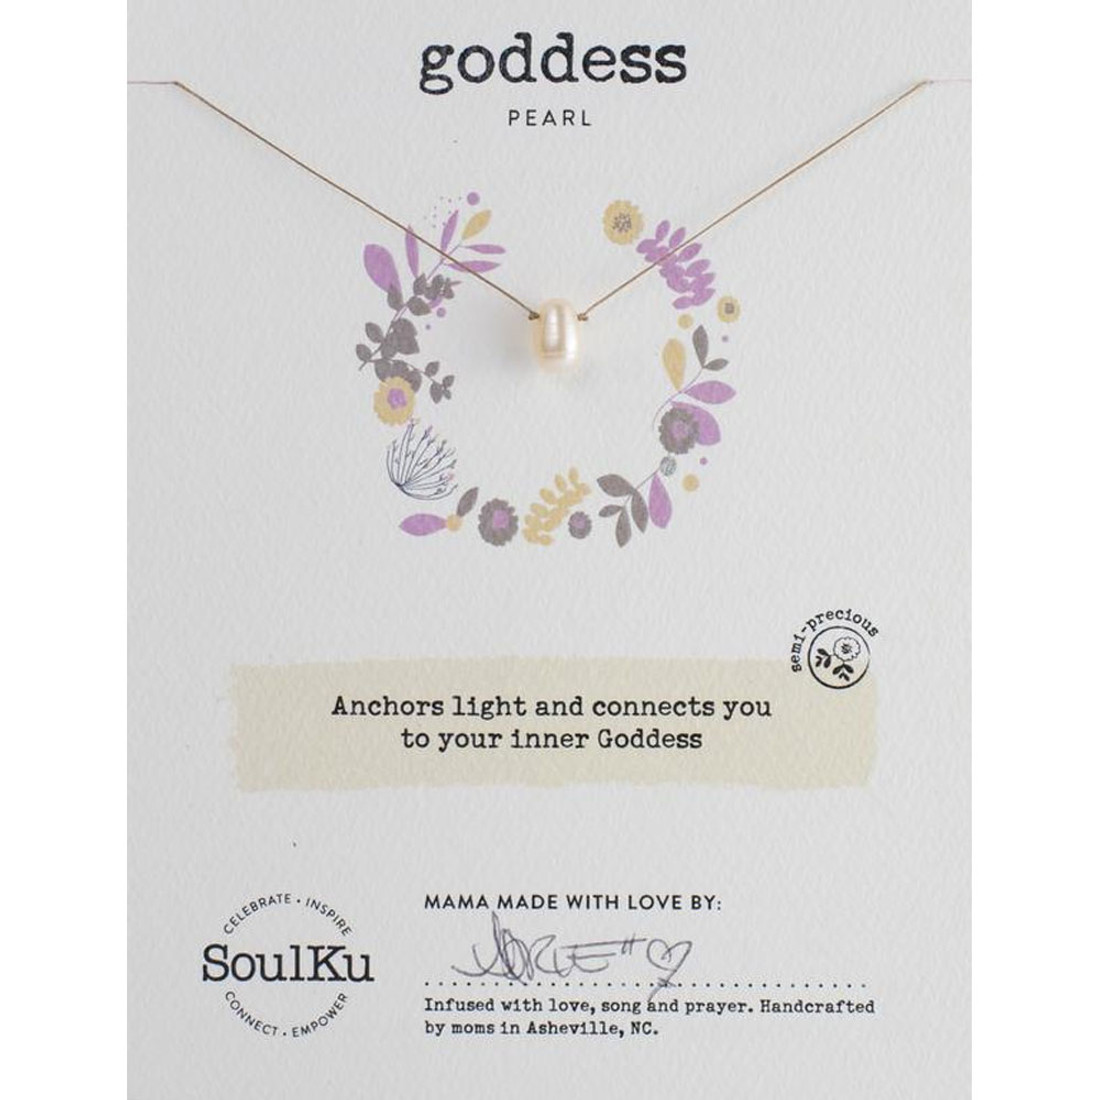 Soulku Goddess Pearl necklace. 